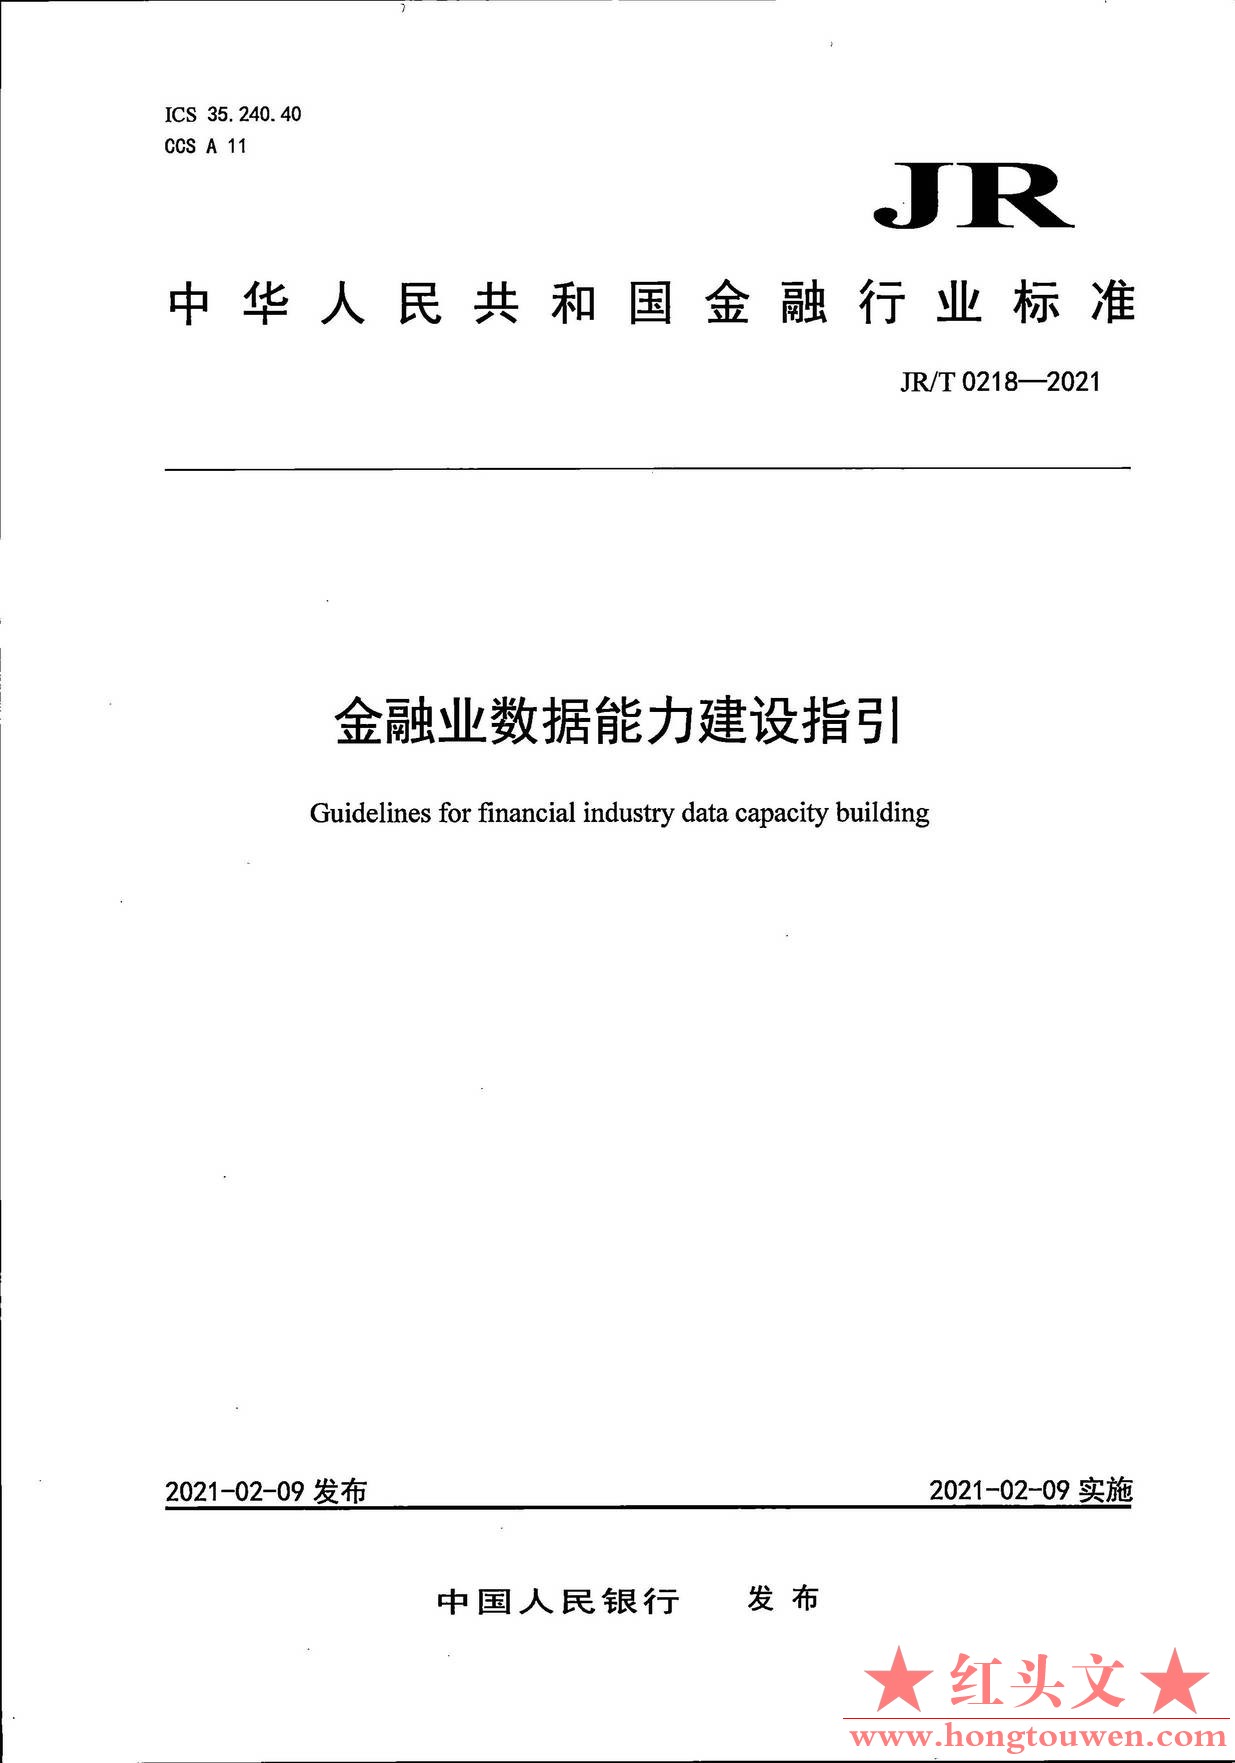 银发[2021]42号-中国人民银行关于发布金融行业标准加强金融业数据能力建设的通知_页面.jpg